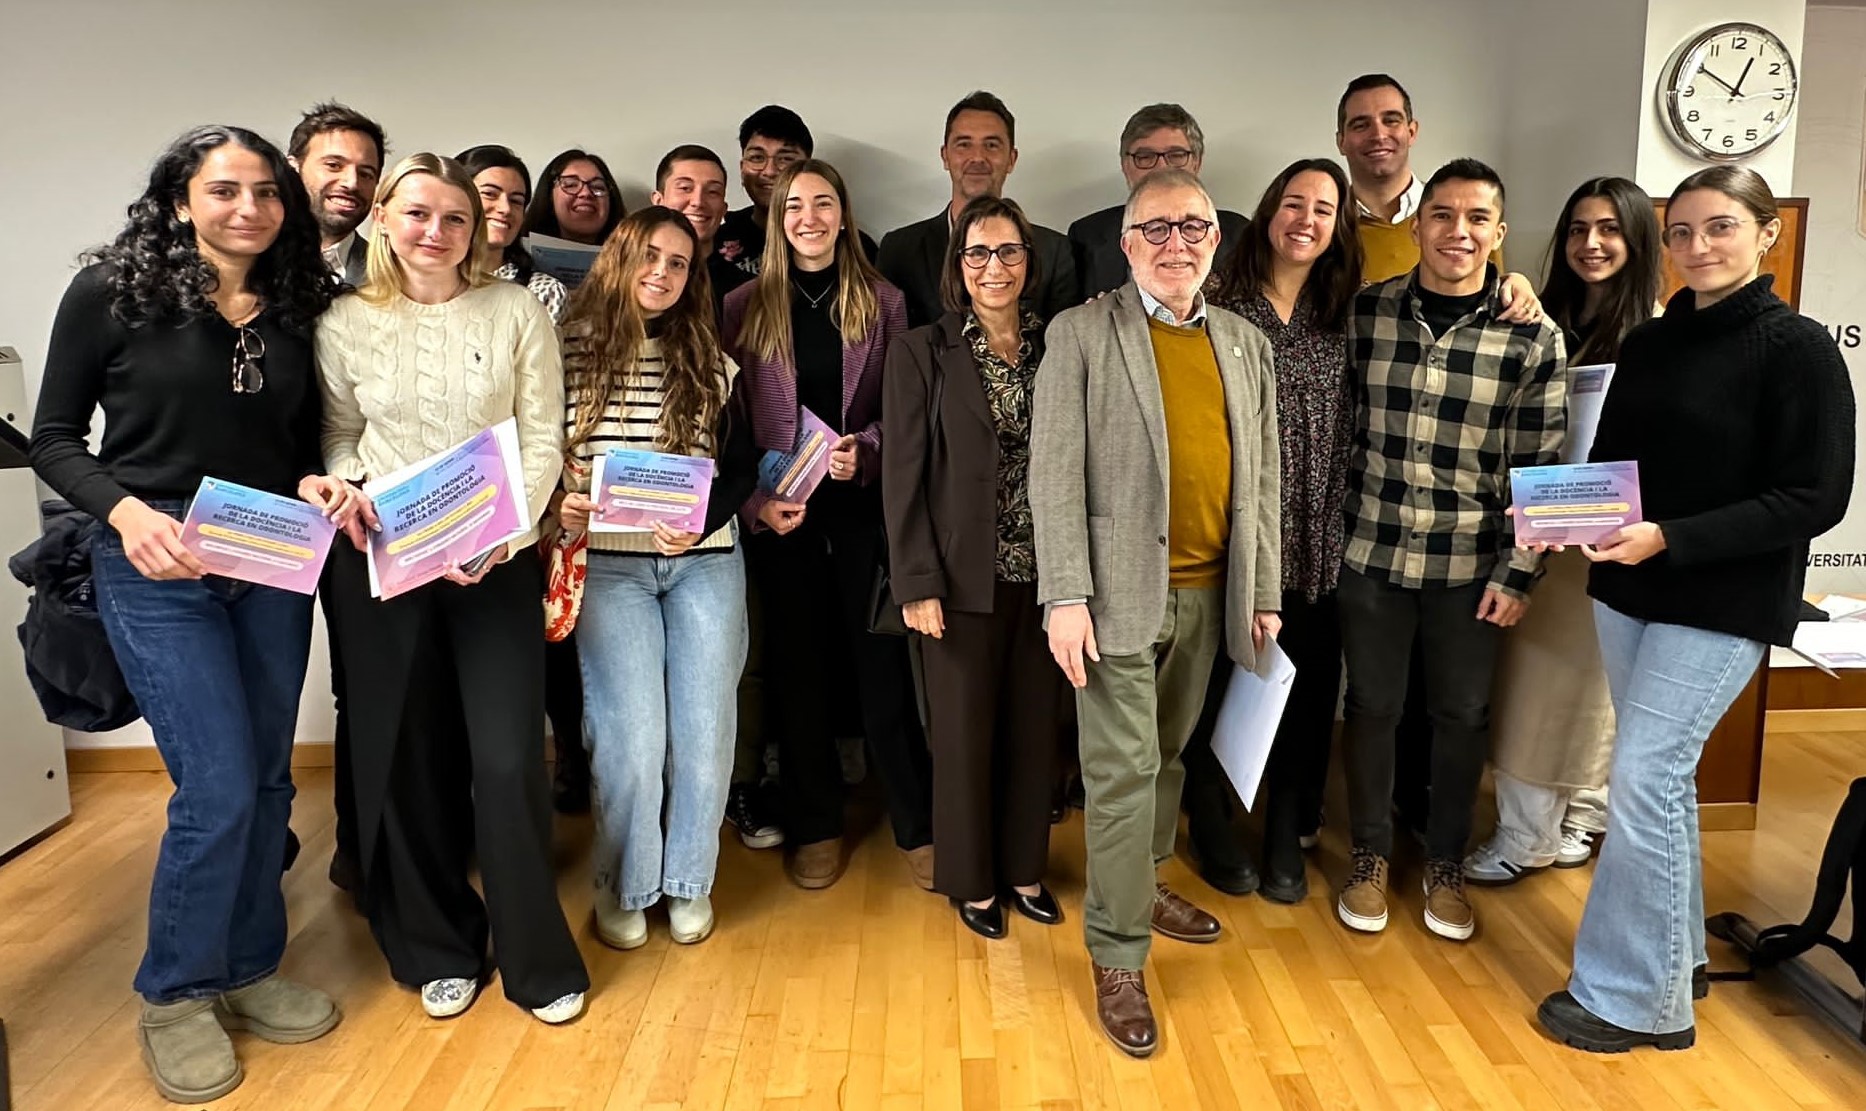 Gran èxit participatiu a la Jornada de Promoció de la Docència i la Recerca en Odontologia, on ha col·laborat la Fundació Josep Finestres.